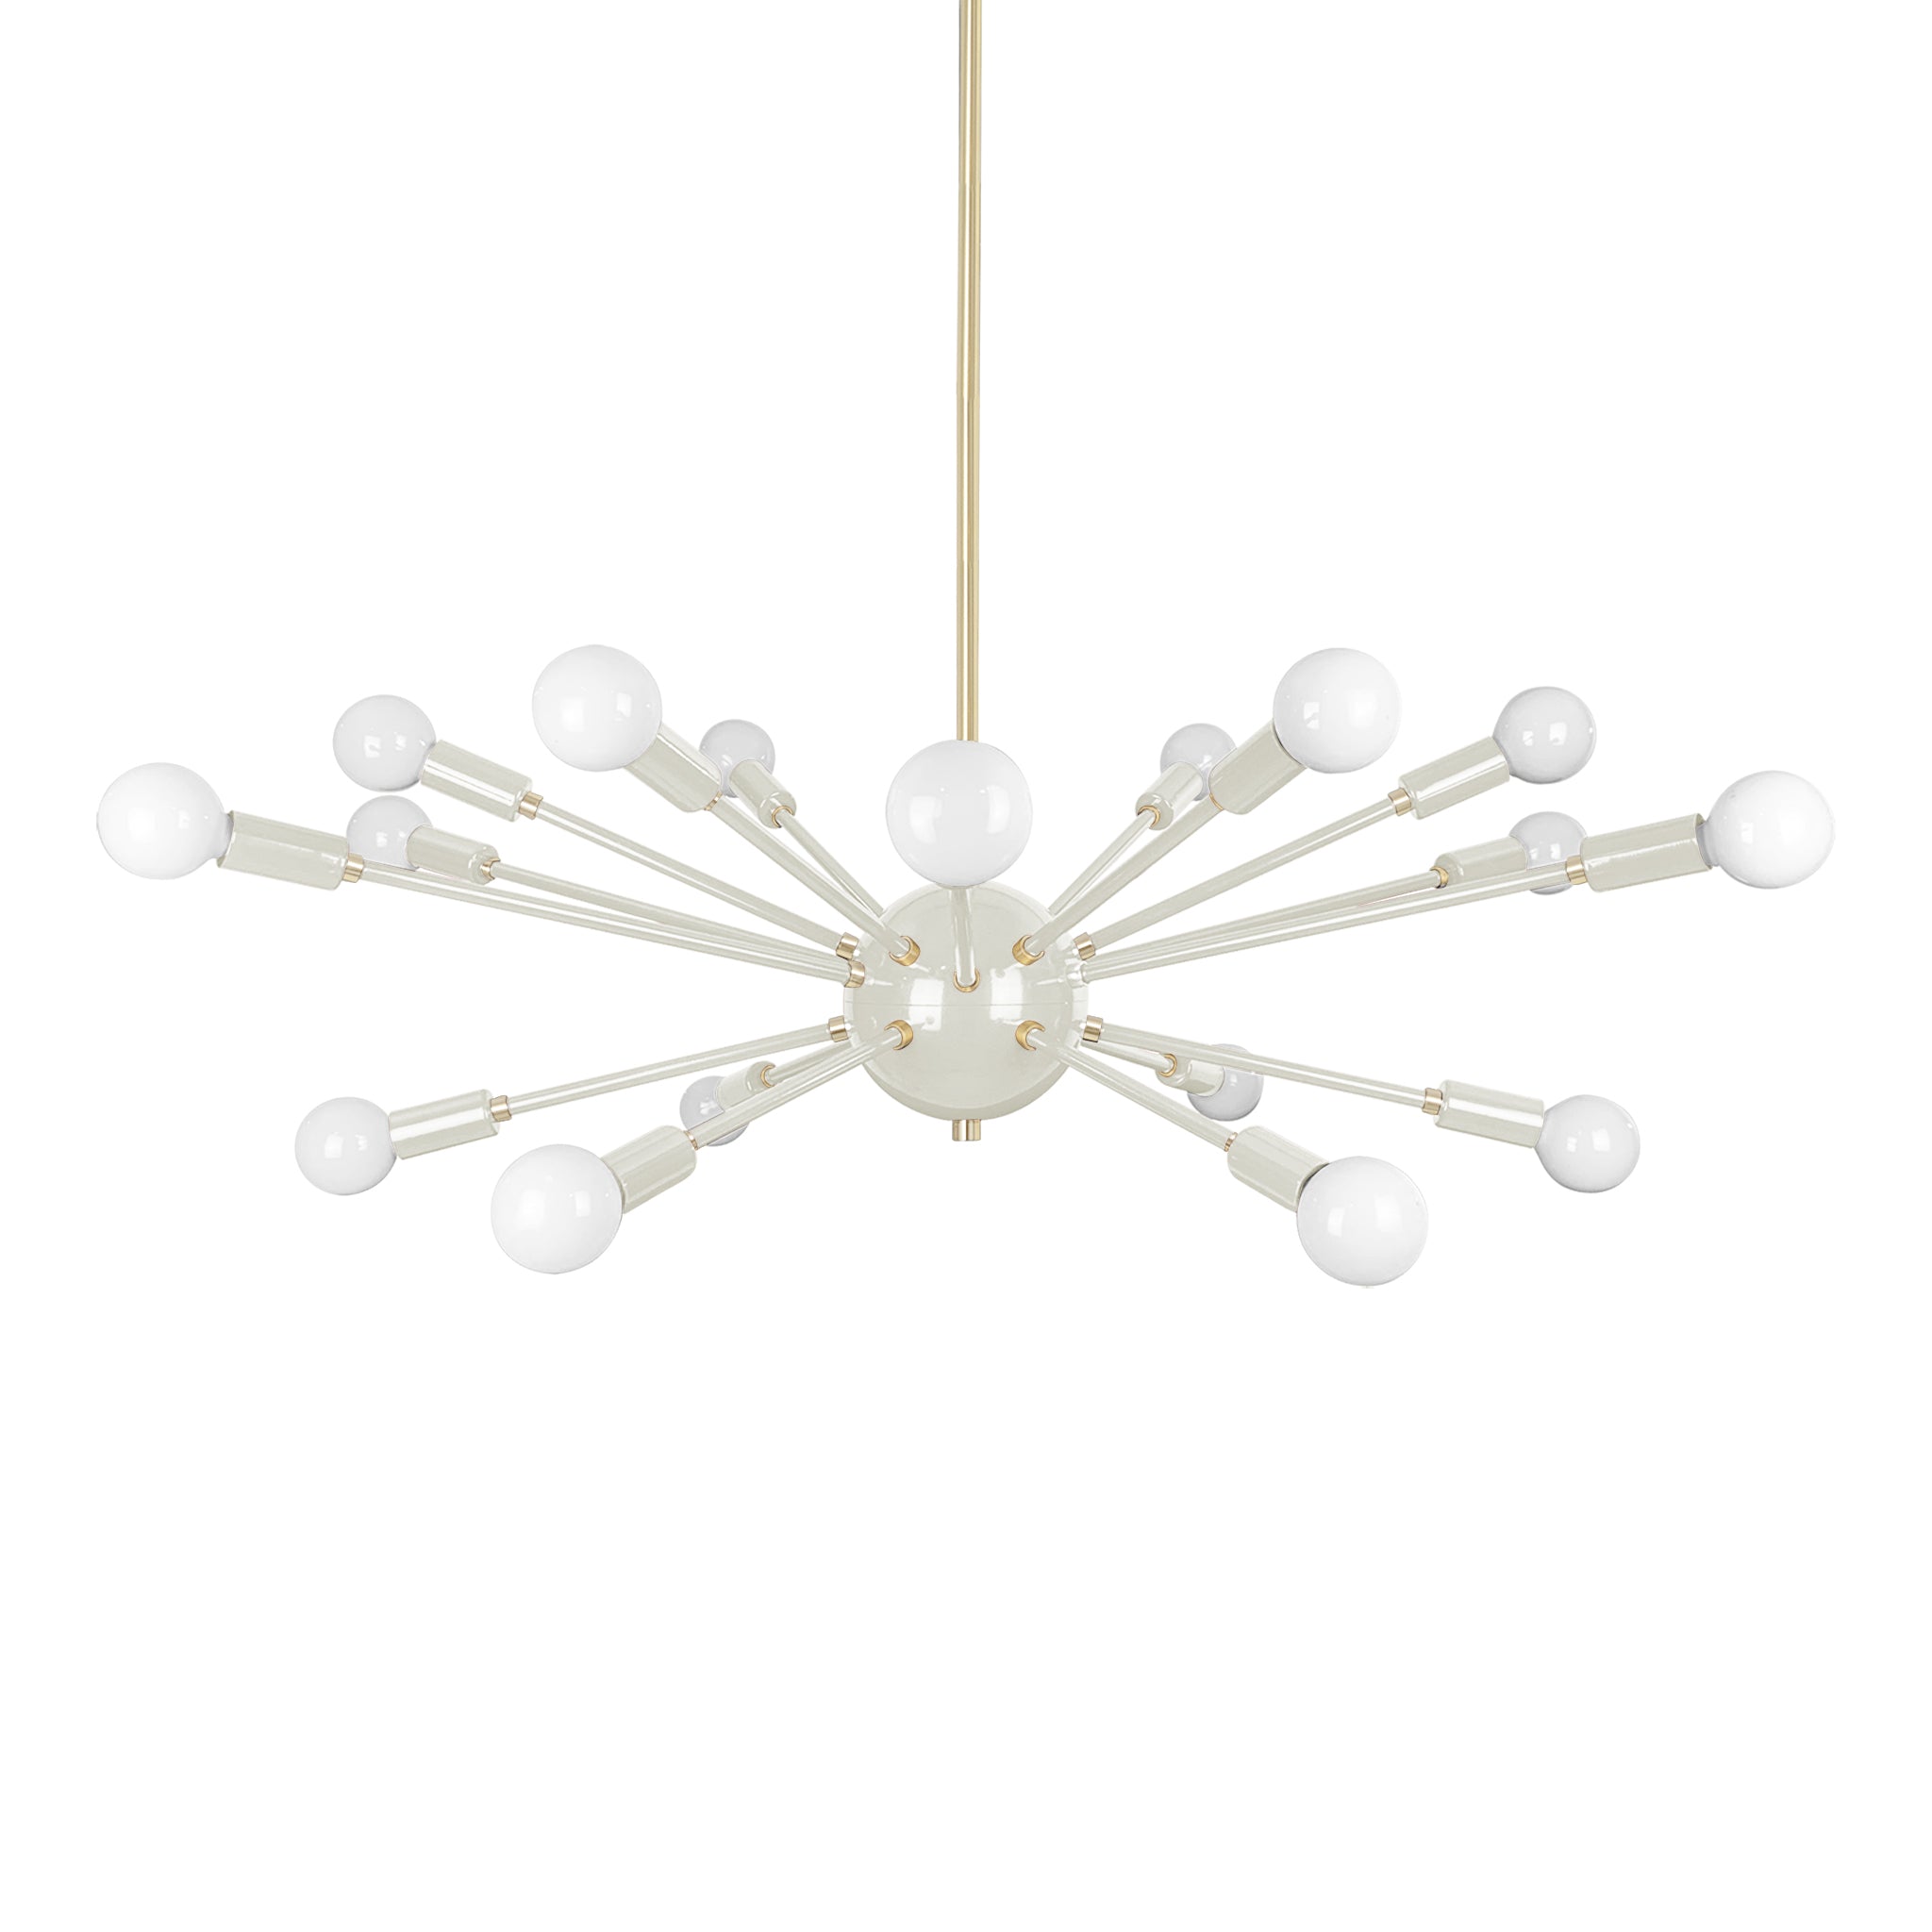 Brass and bone color Elliptical Sputnik chandelier 32" Dutton Brown lighting